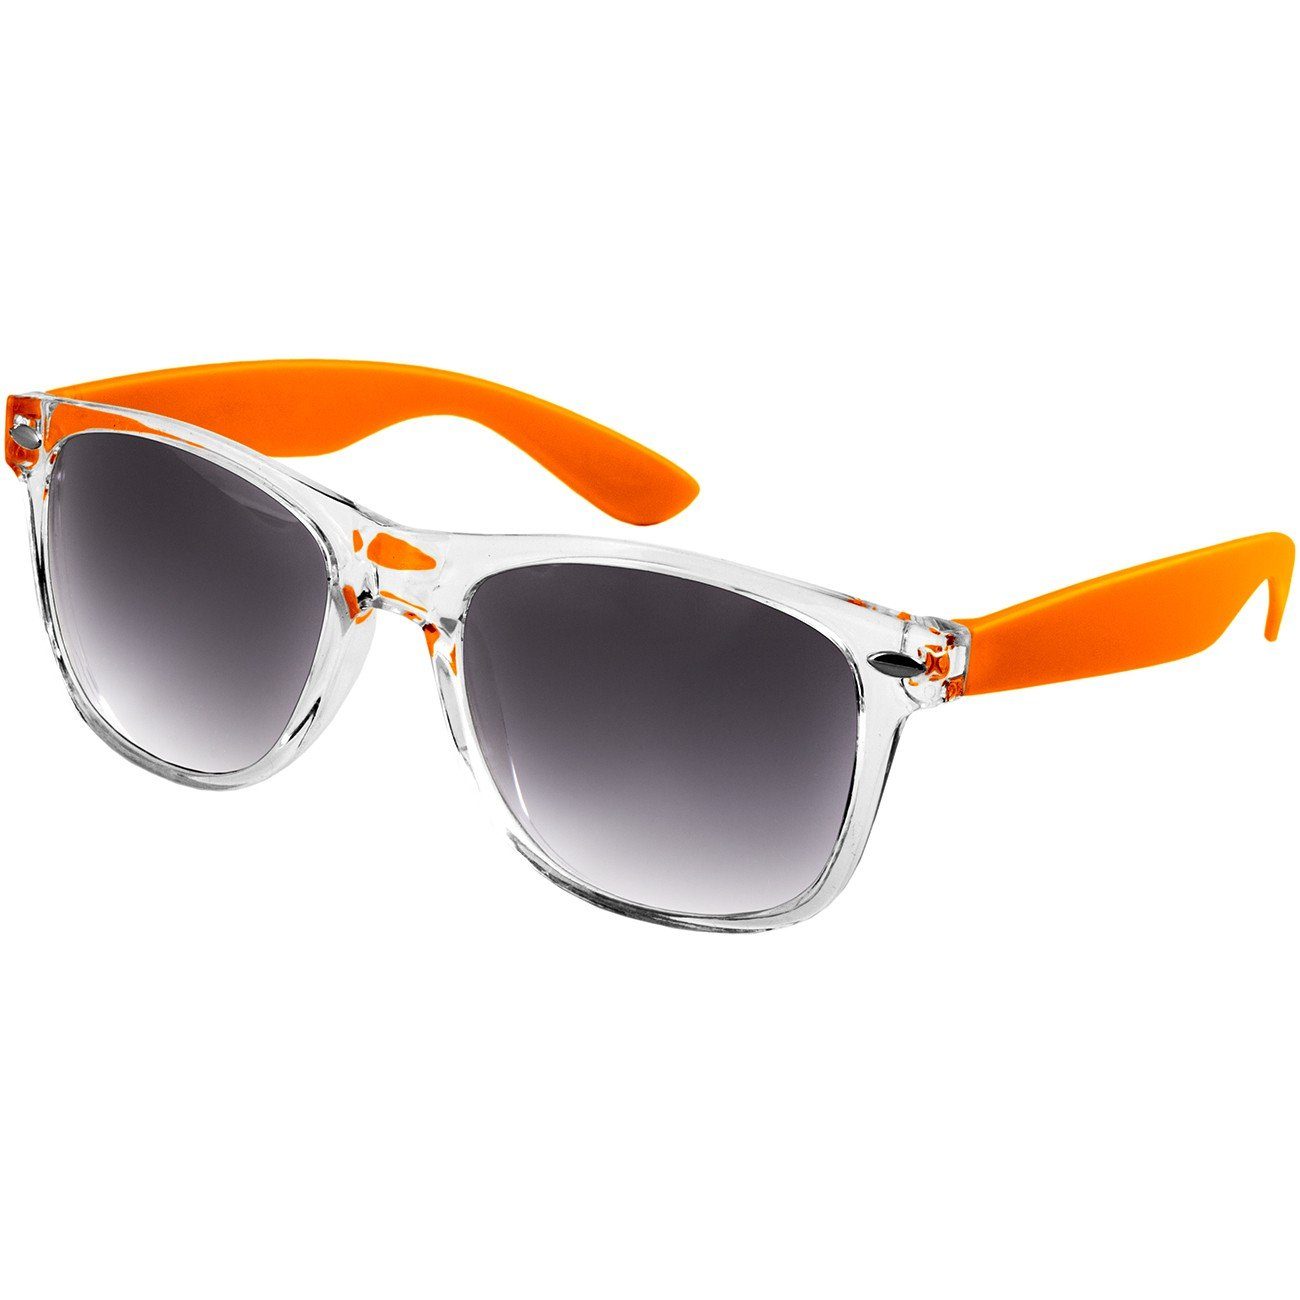 Caspar Sonnenbrille SG017 Damen RETRO Designbrille orange / schwarz getönt